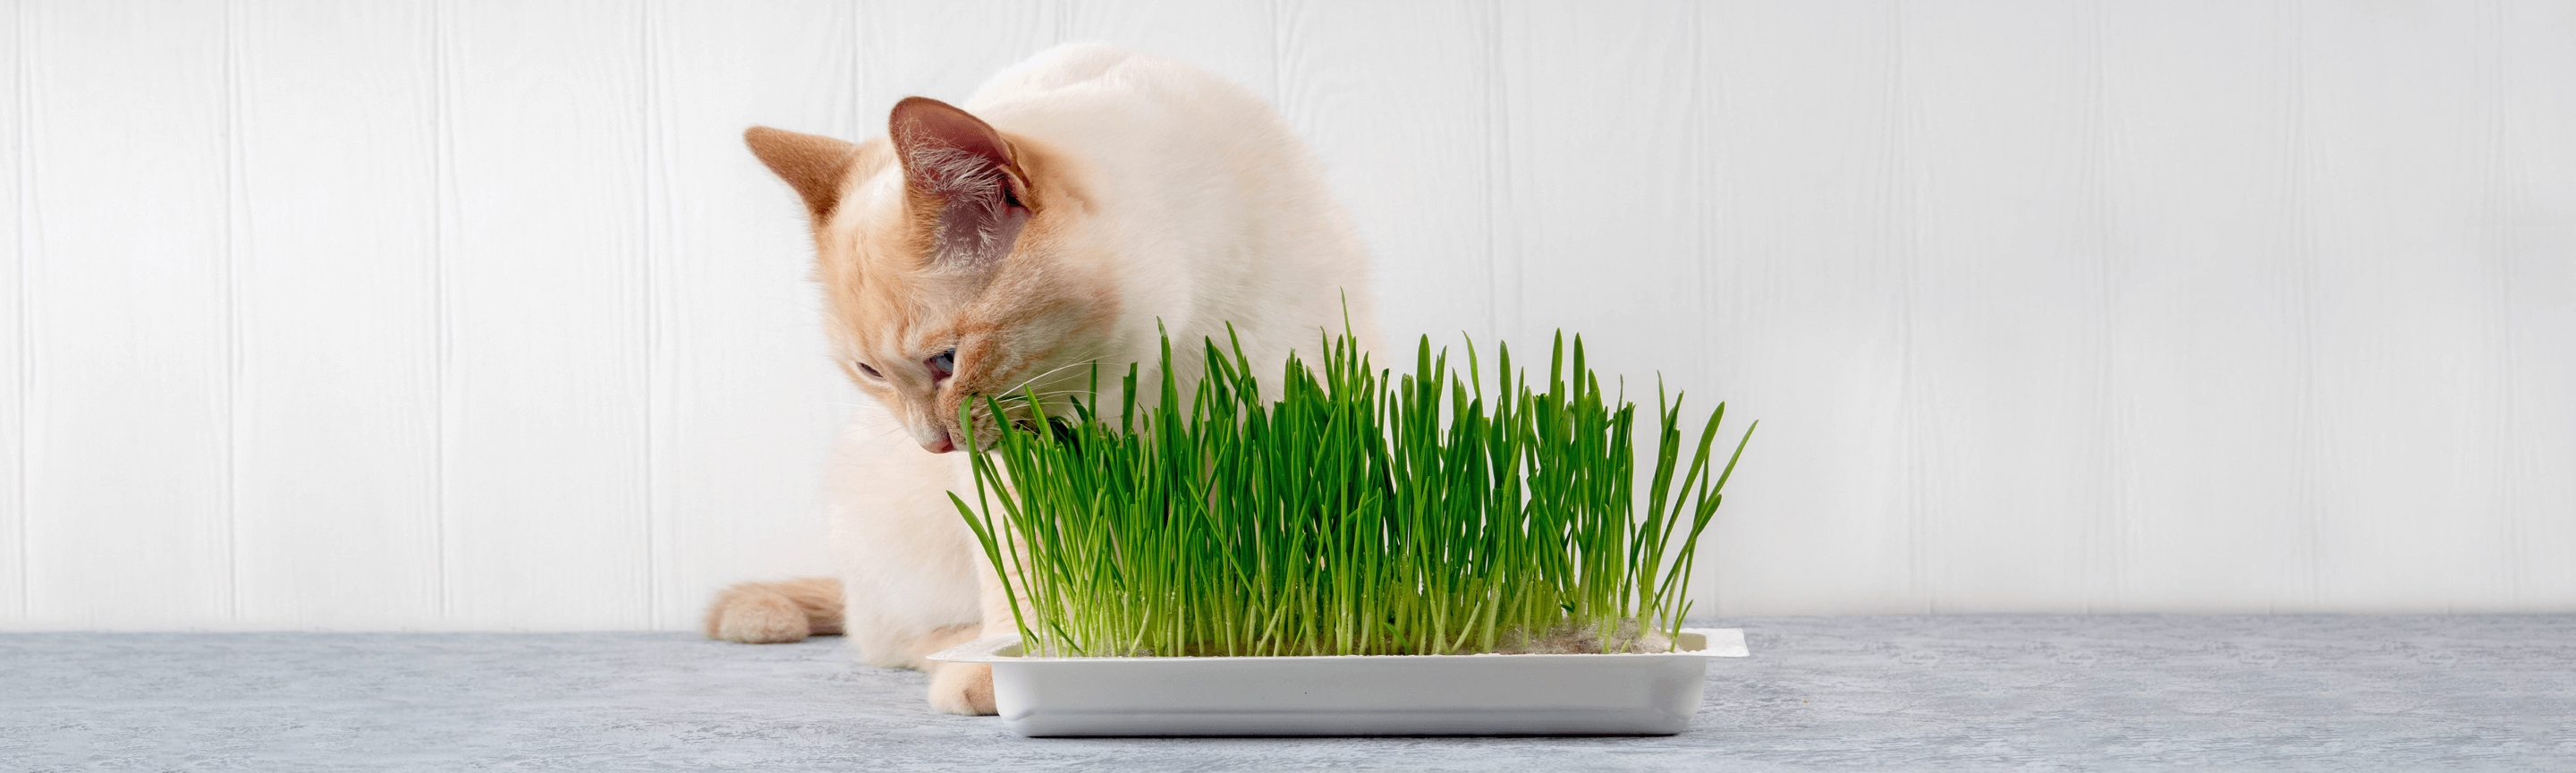 коты едят траву